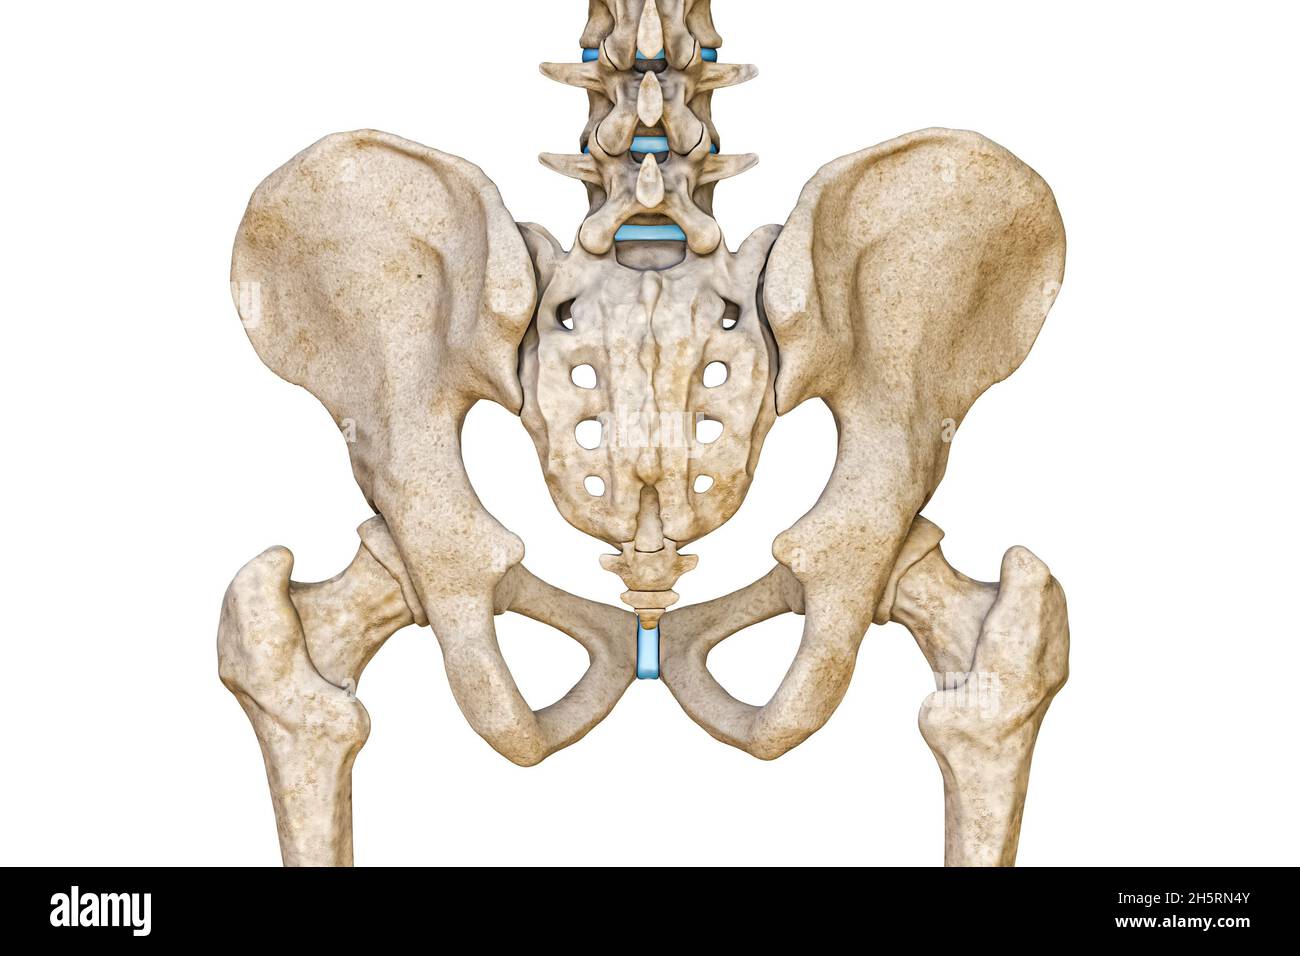 Vista posteriore o posteriore di pelvi maschile umano, sacro, colonna lombare e ossa femorali isolate su sfondo bianco illustrazione di rendering 3D. Anatomo bianco Foto Stock